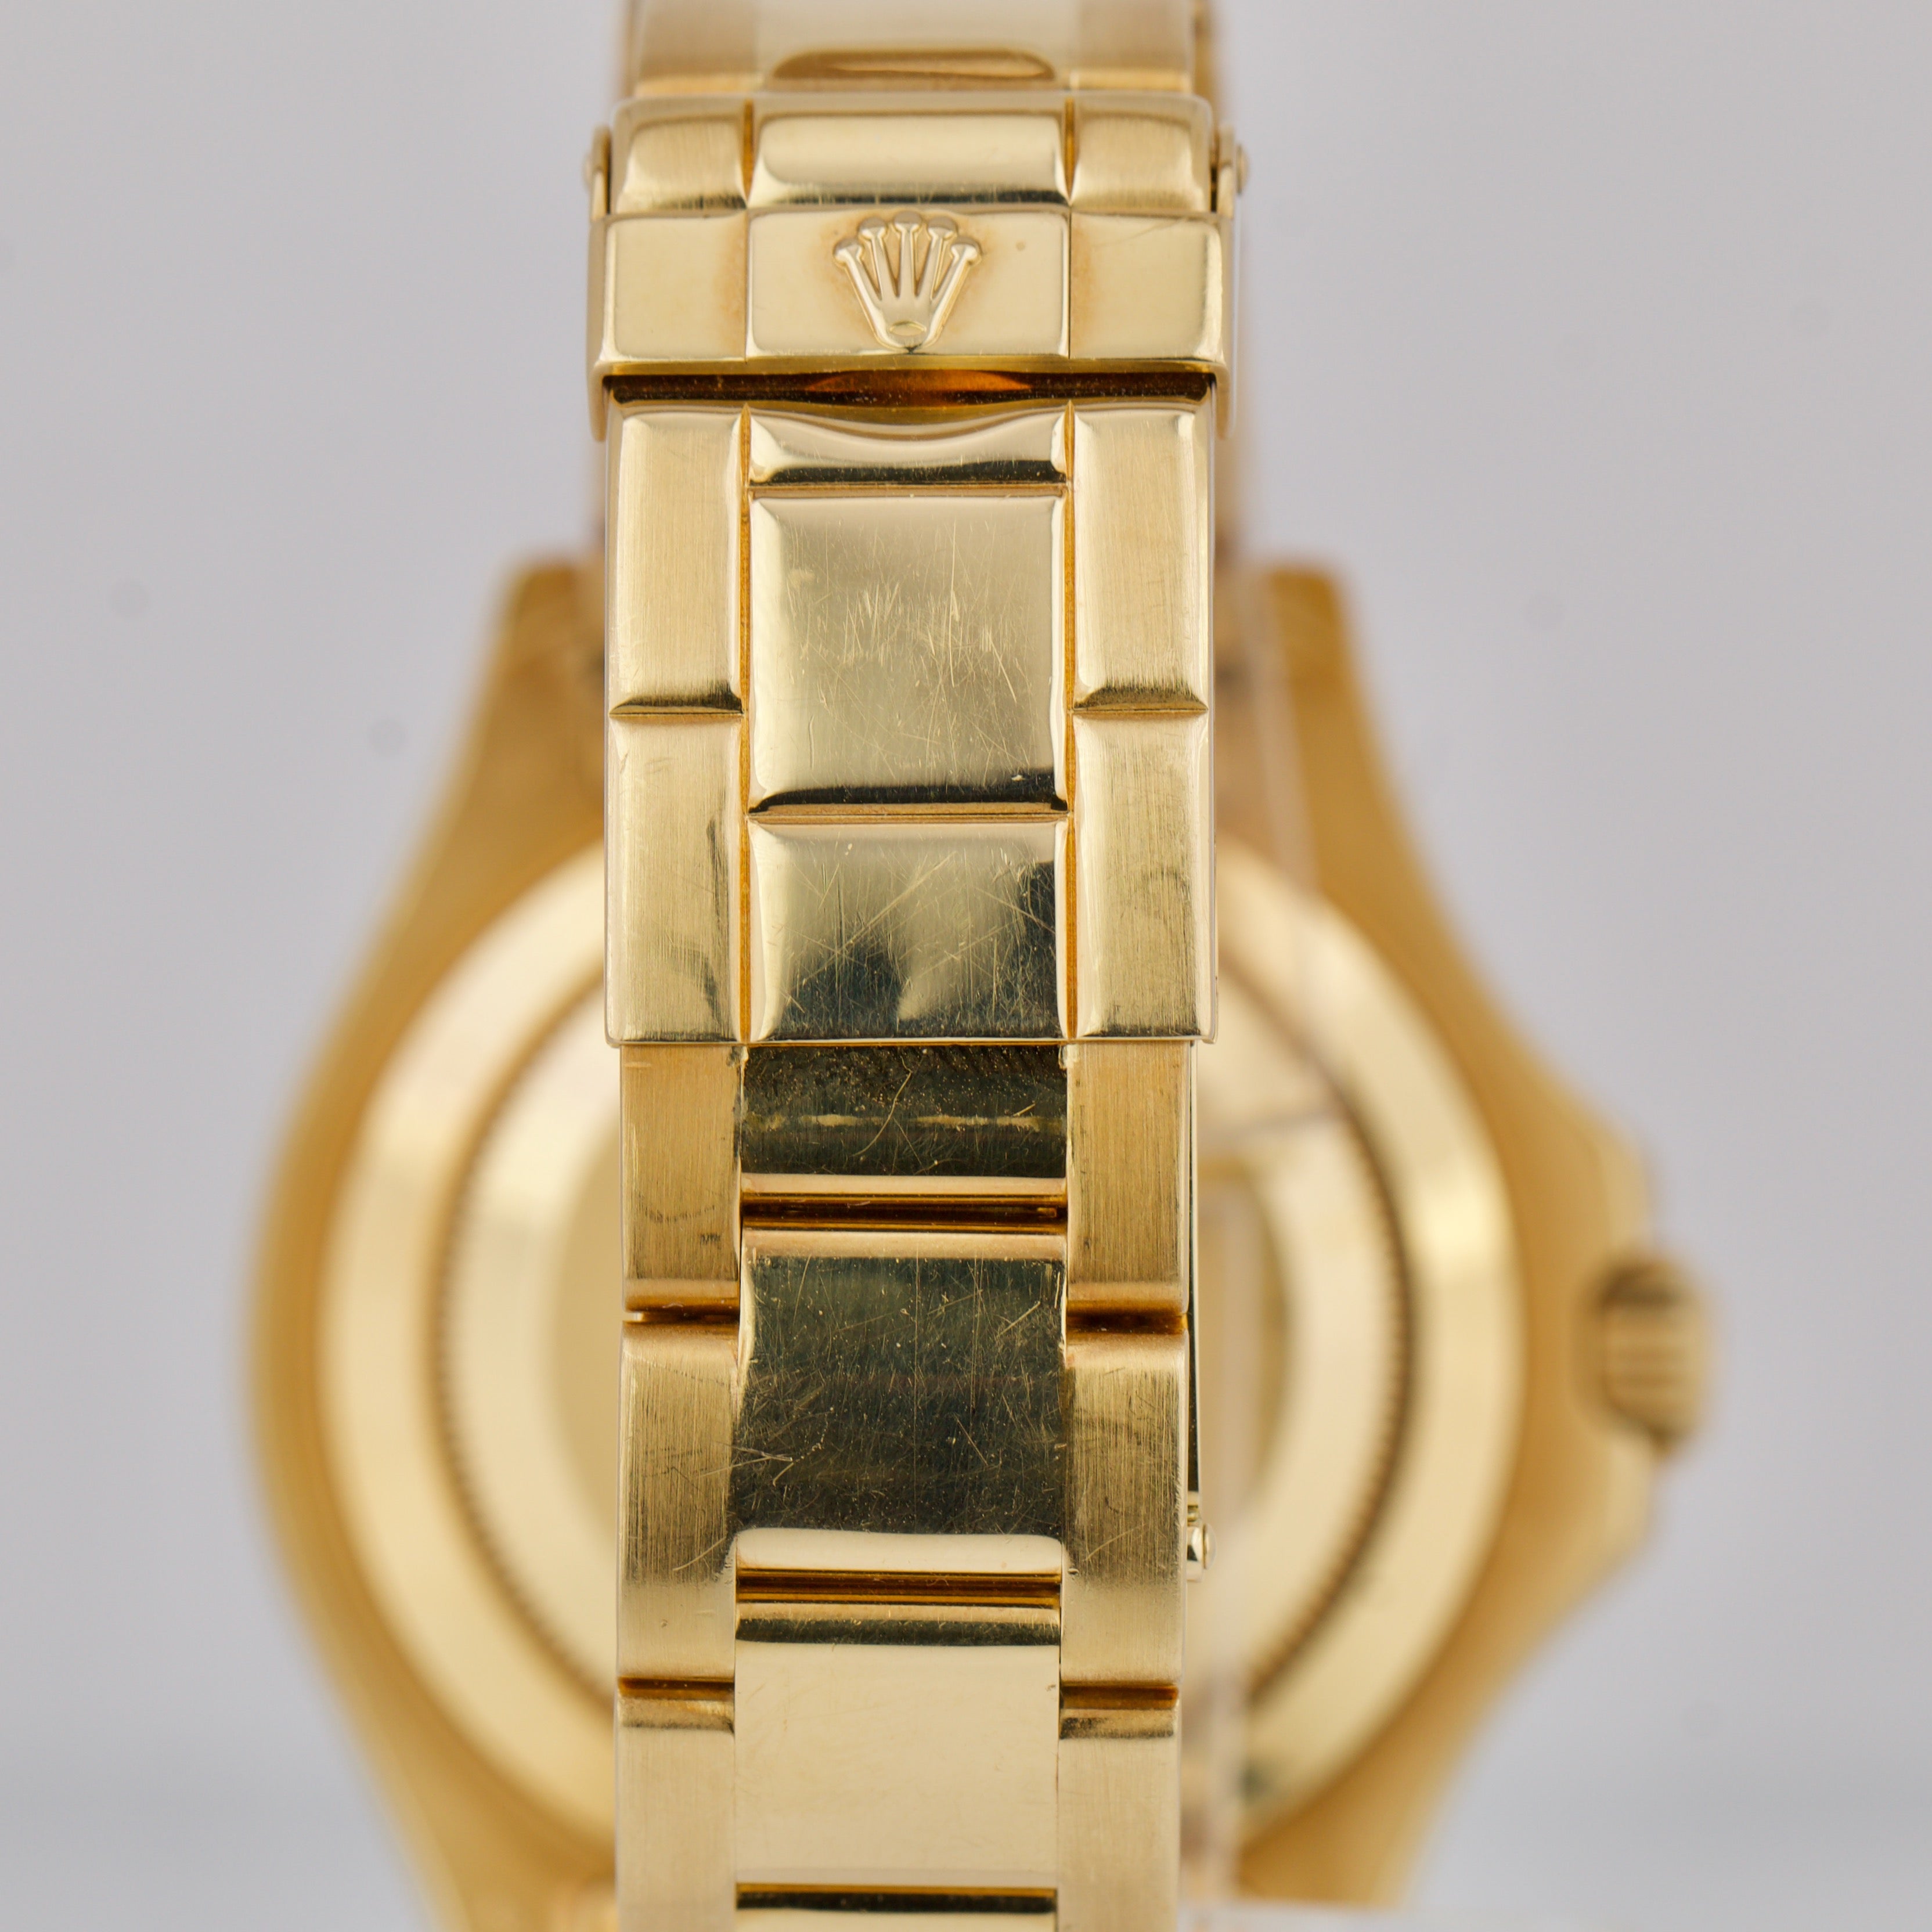 Rolex Yacht-Master 18K Yellow Gold Mop Sapphire/Diamond Dial 40mm Watch K 16628